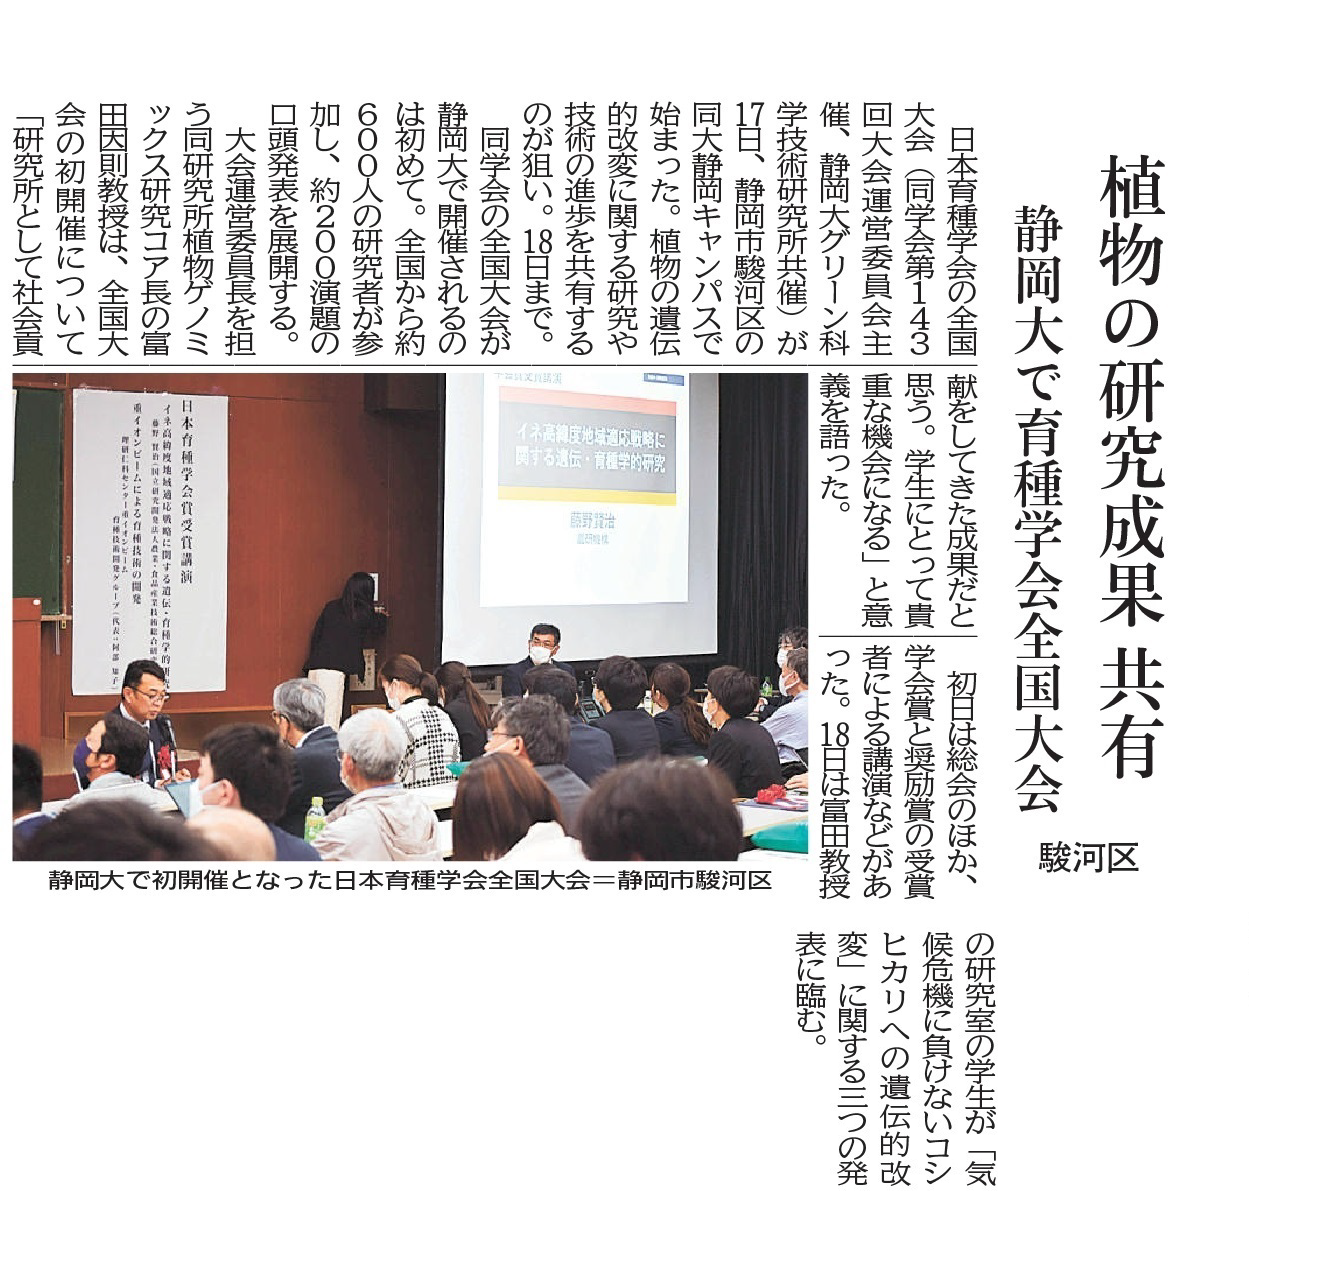 富田因則教授を大会運営委員長として日本育種学会全国大会が初めて静岡大学で開催されました（静岡新聞掲載）